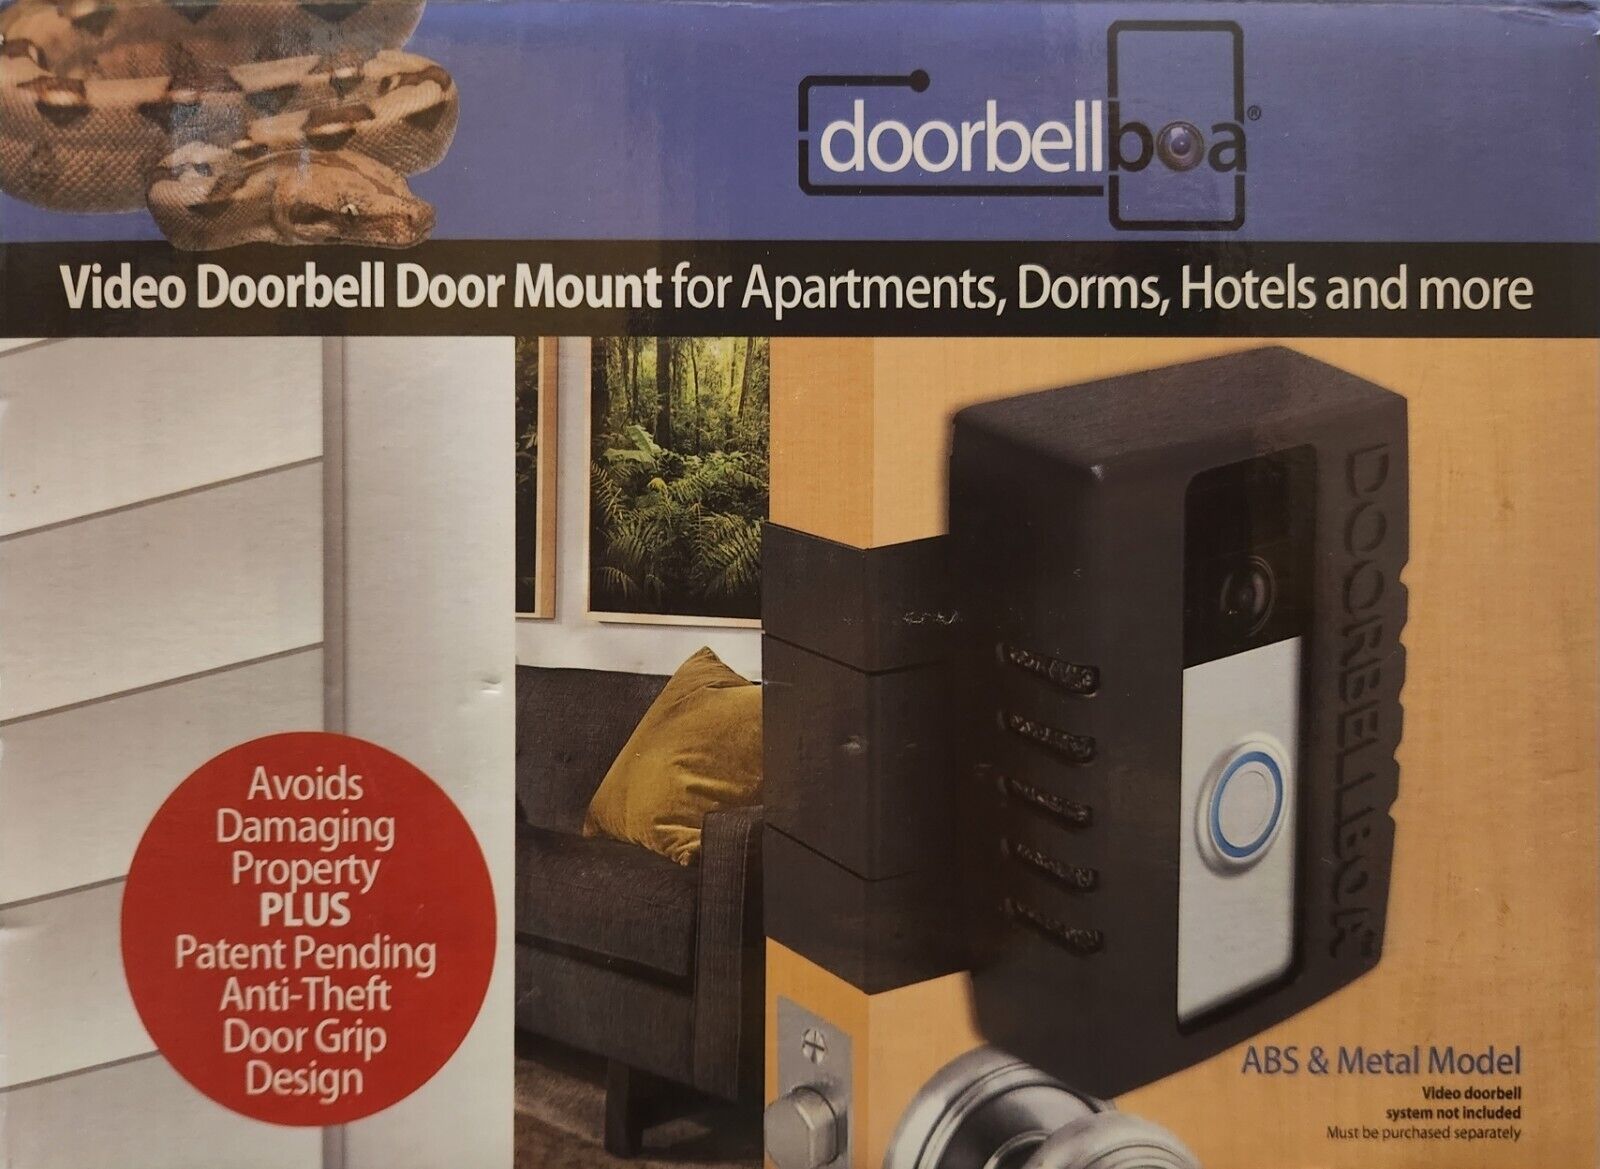 Doorbell Boa Anti-Theft Video Doorbell Door Mount (New)